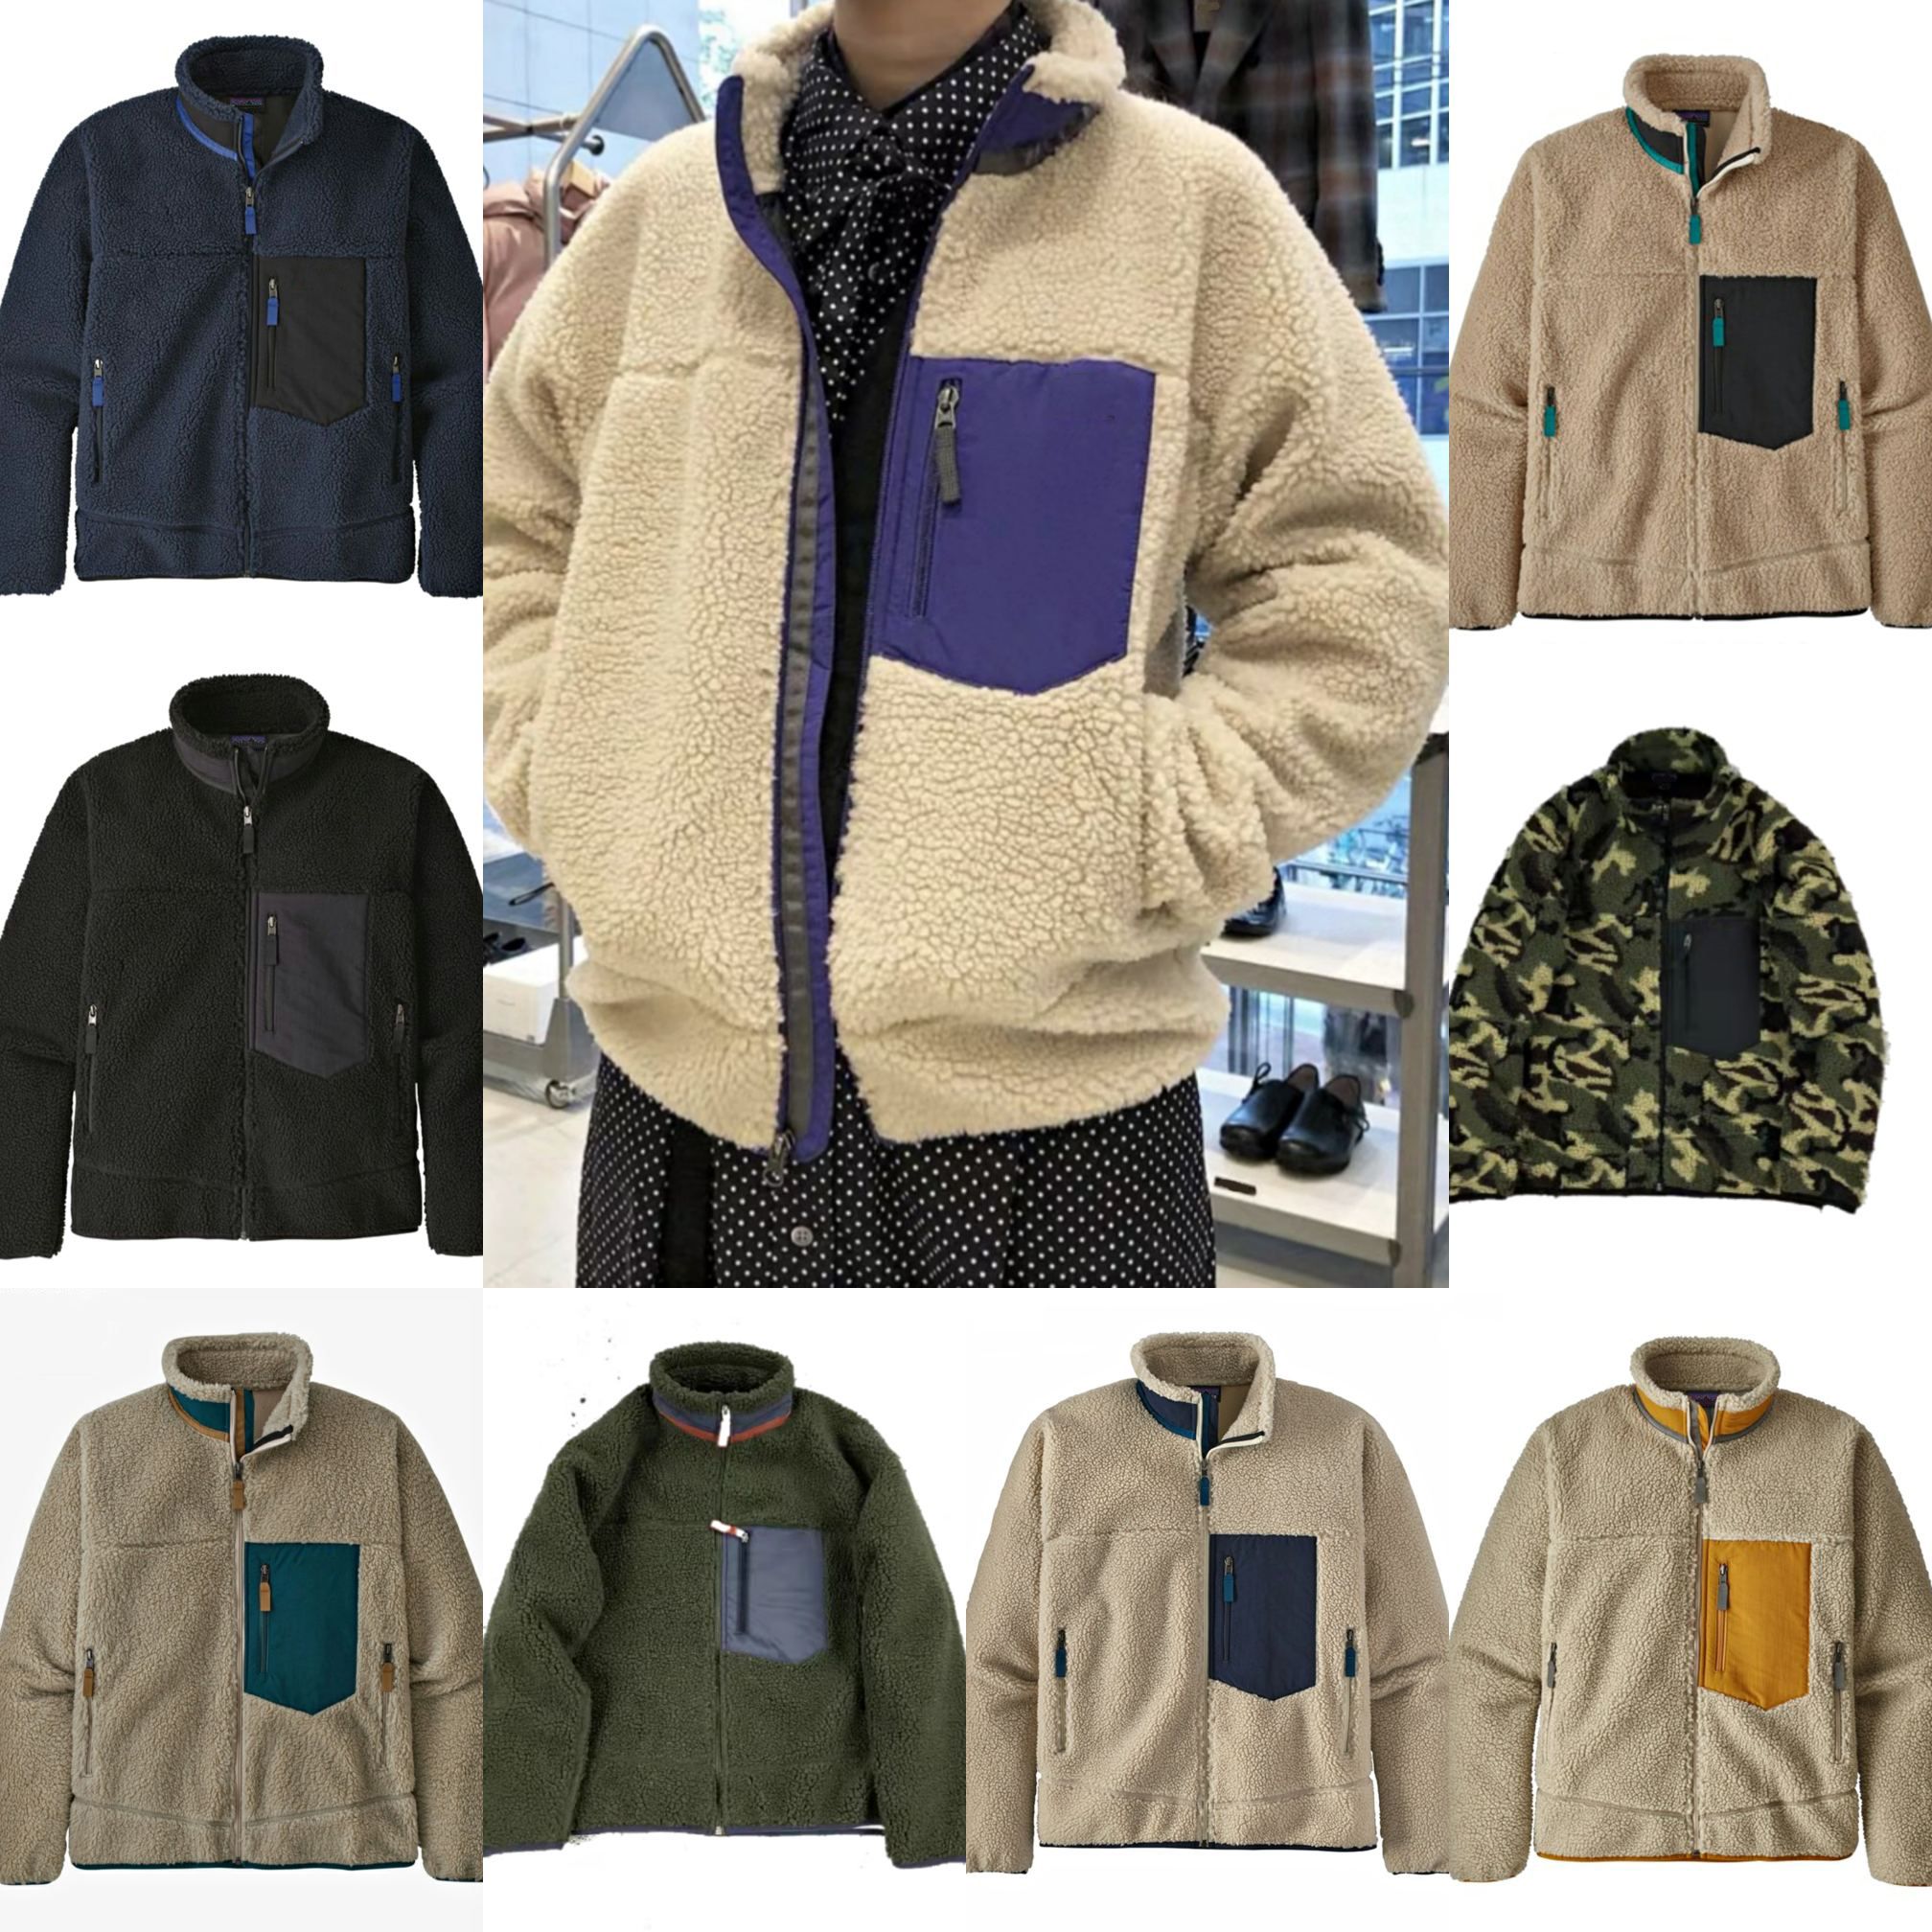 Diseñador hombre patagonia chaqueta patagonia grueso cálido abajo clásico retro otoño invierno pareja modelos cordero cachemira vellón abrigo hombres mujer ropa